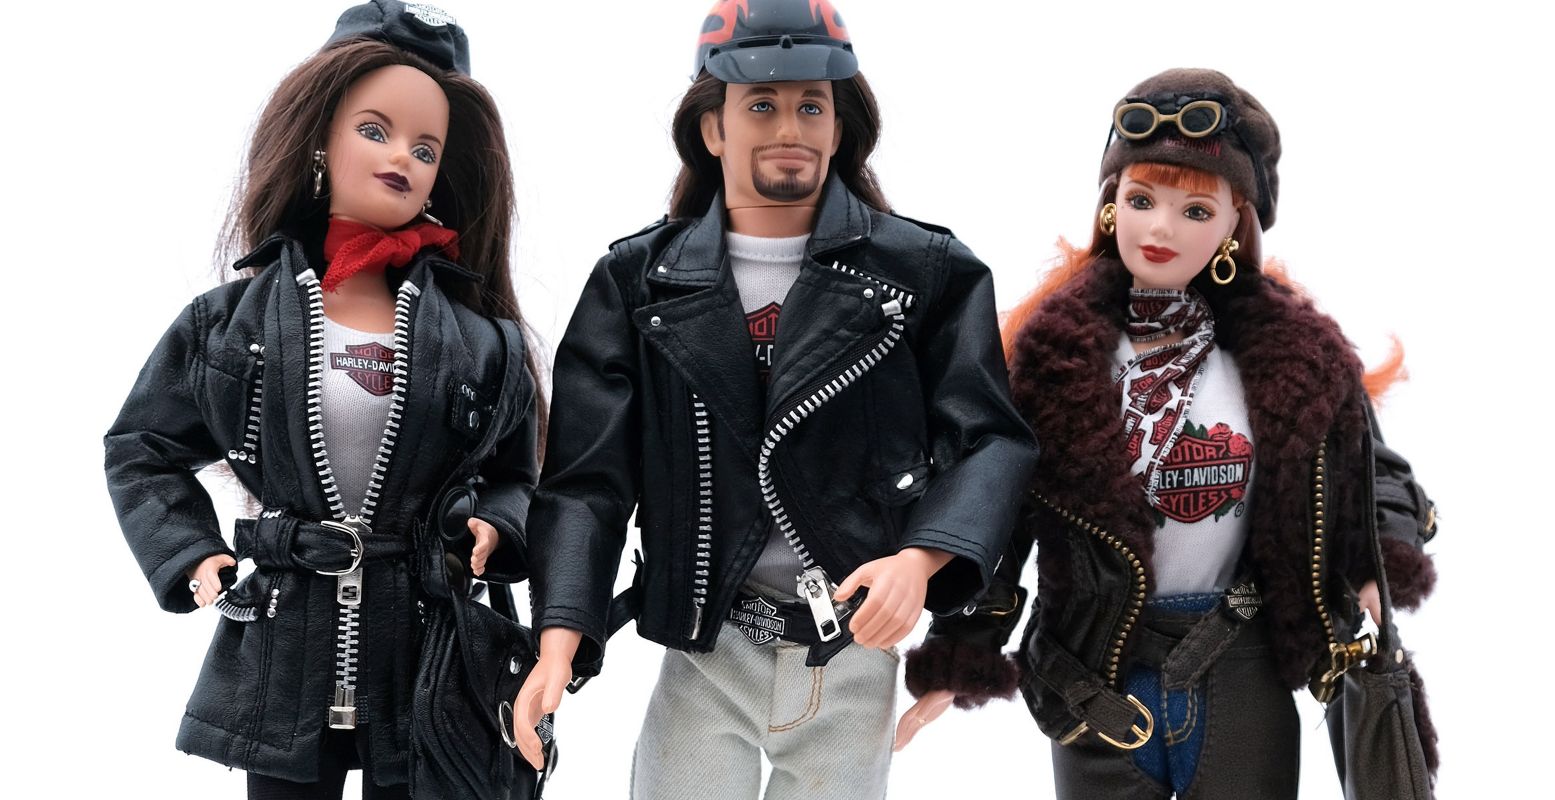 Barbie rockt! Ook al in de jaren 80. Toen waren rockstar Barbie en rockstar Ken dé toppers onder de barbiepoppen. Foto: Stedelijk Museum Almelo